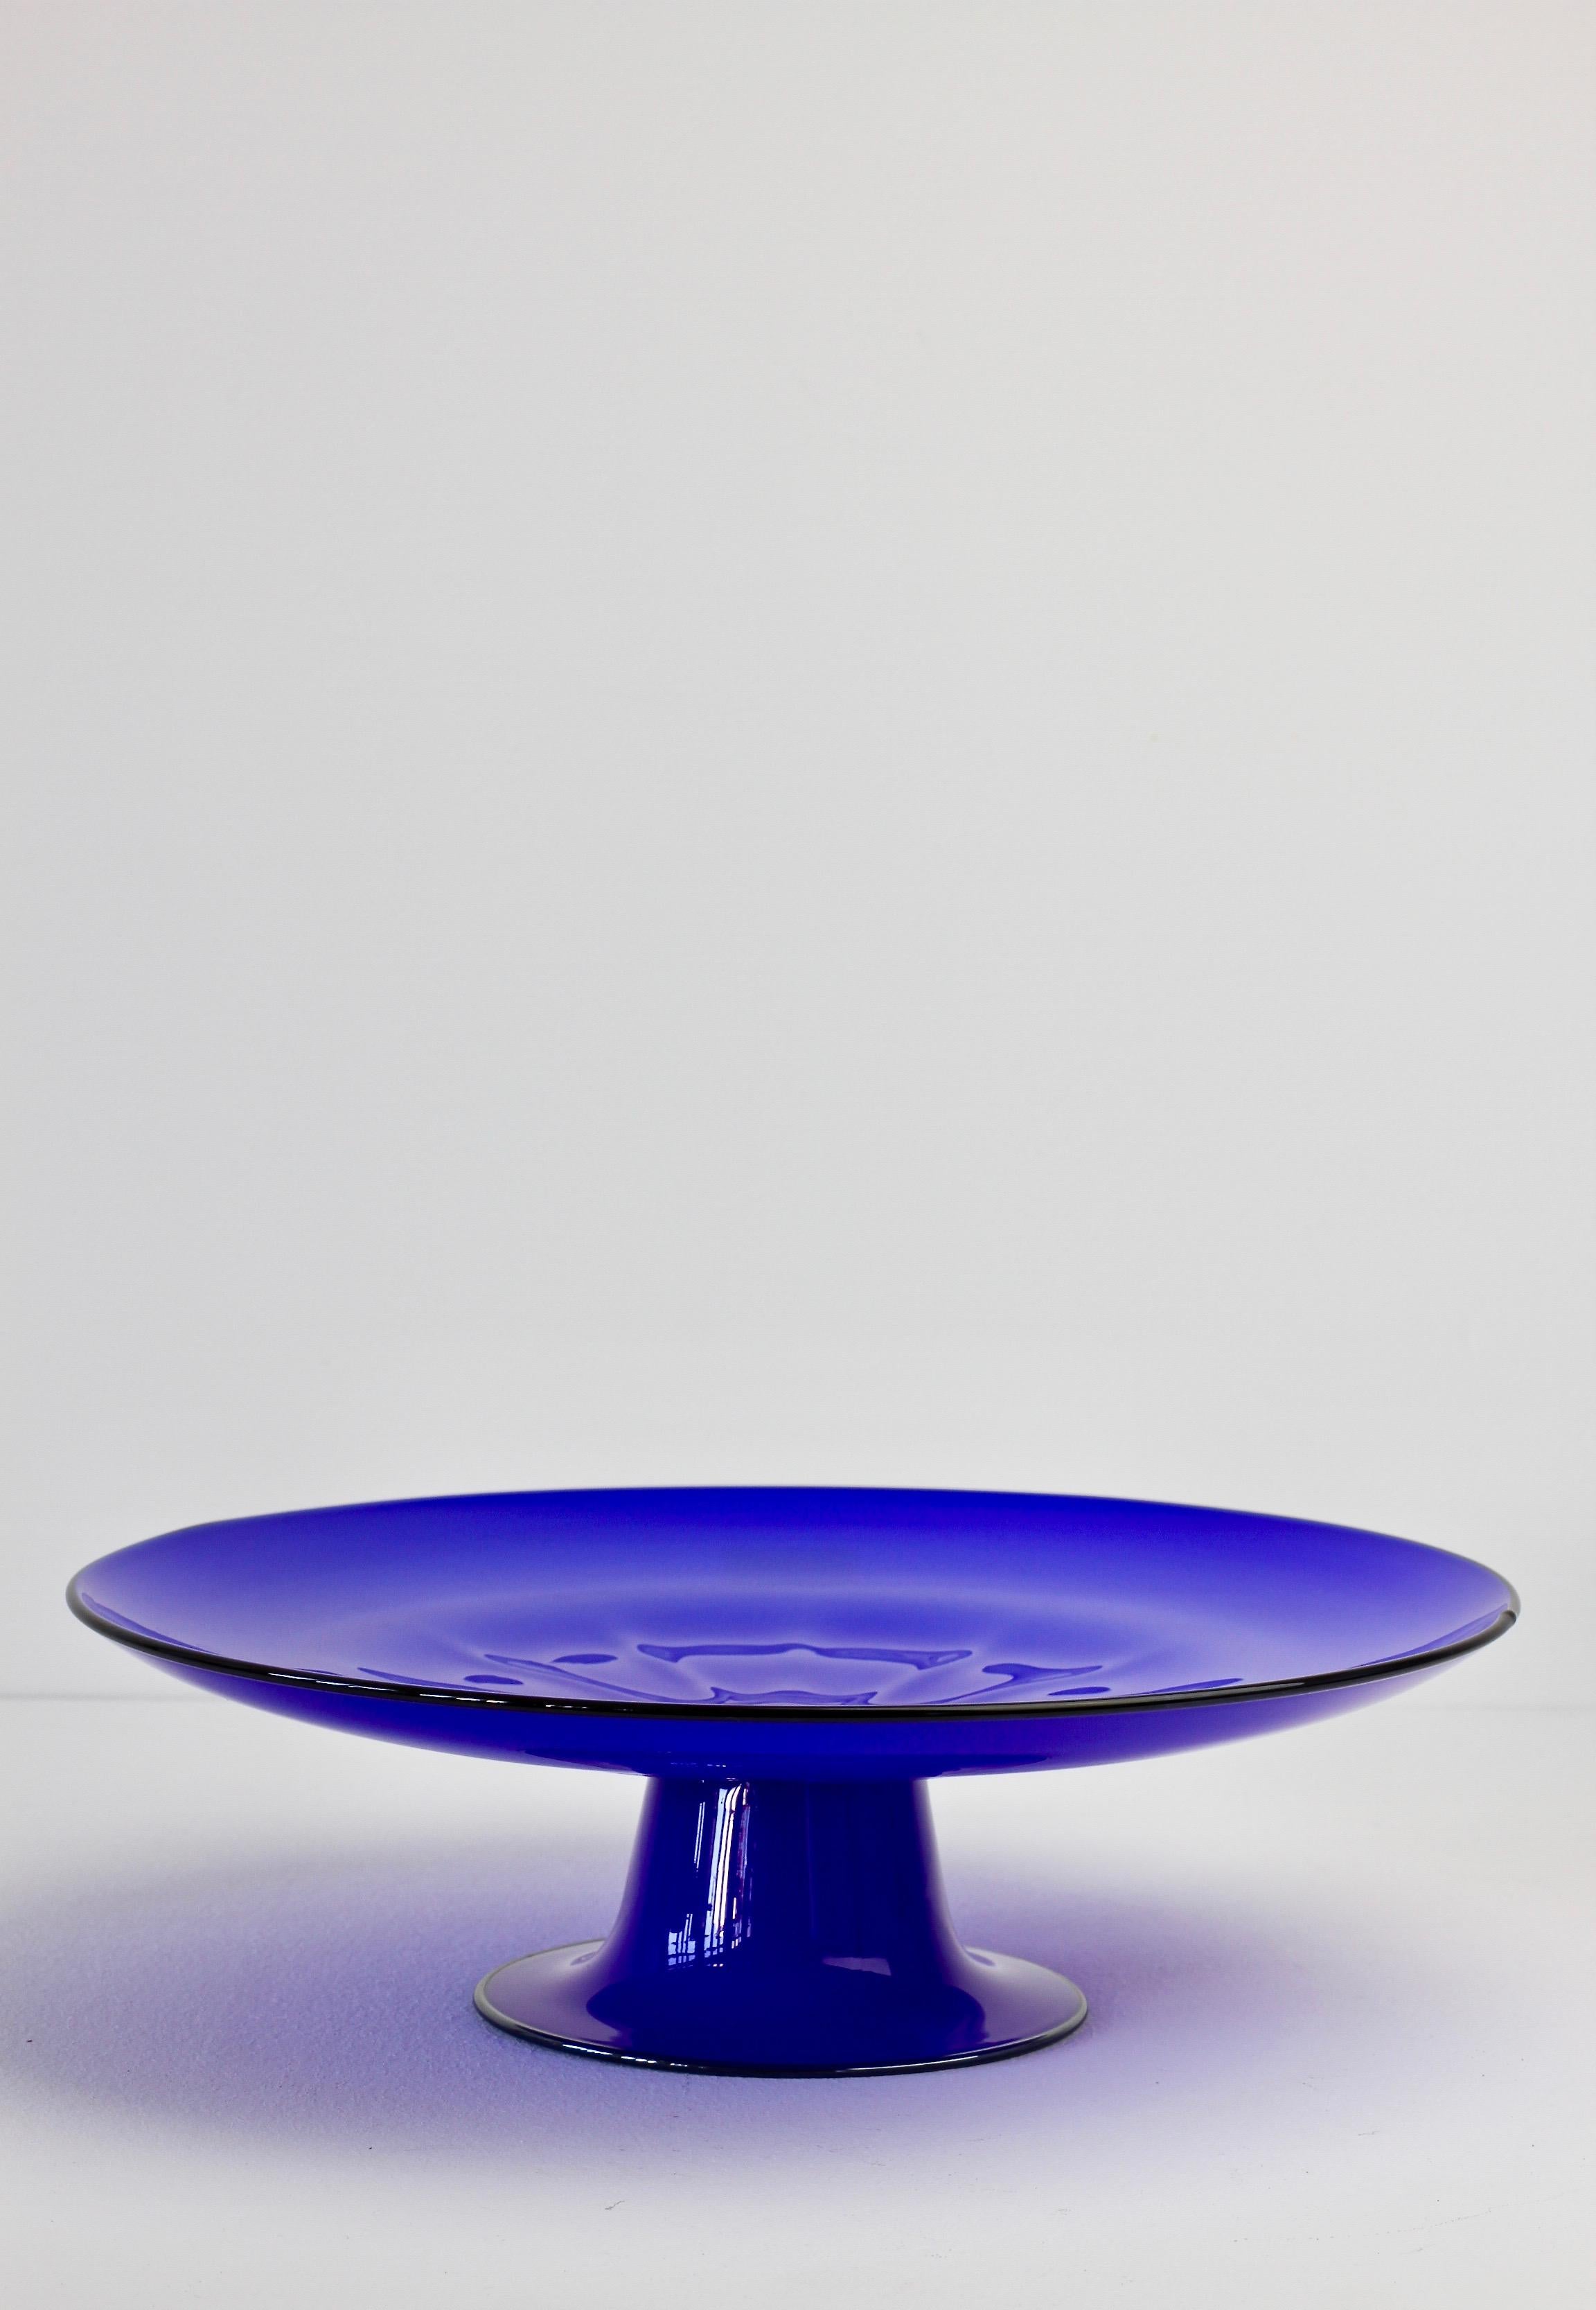 Porte-gâteau ou assiette de service en verre de Cenedese. Merveilleuse couleur bleue avec des bandes noires et une forme simpliste mais élégante. Amusez-vous à dîner avec des ustensiles de service en verre de Murano vintage du milieu du siècle.
